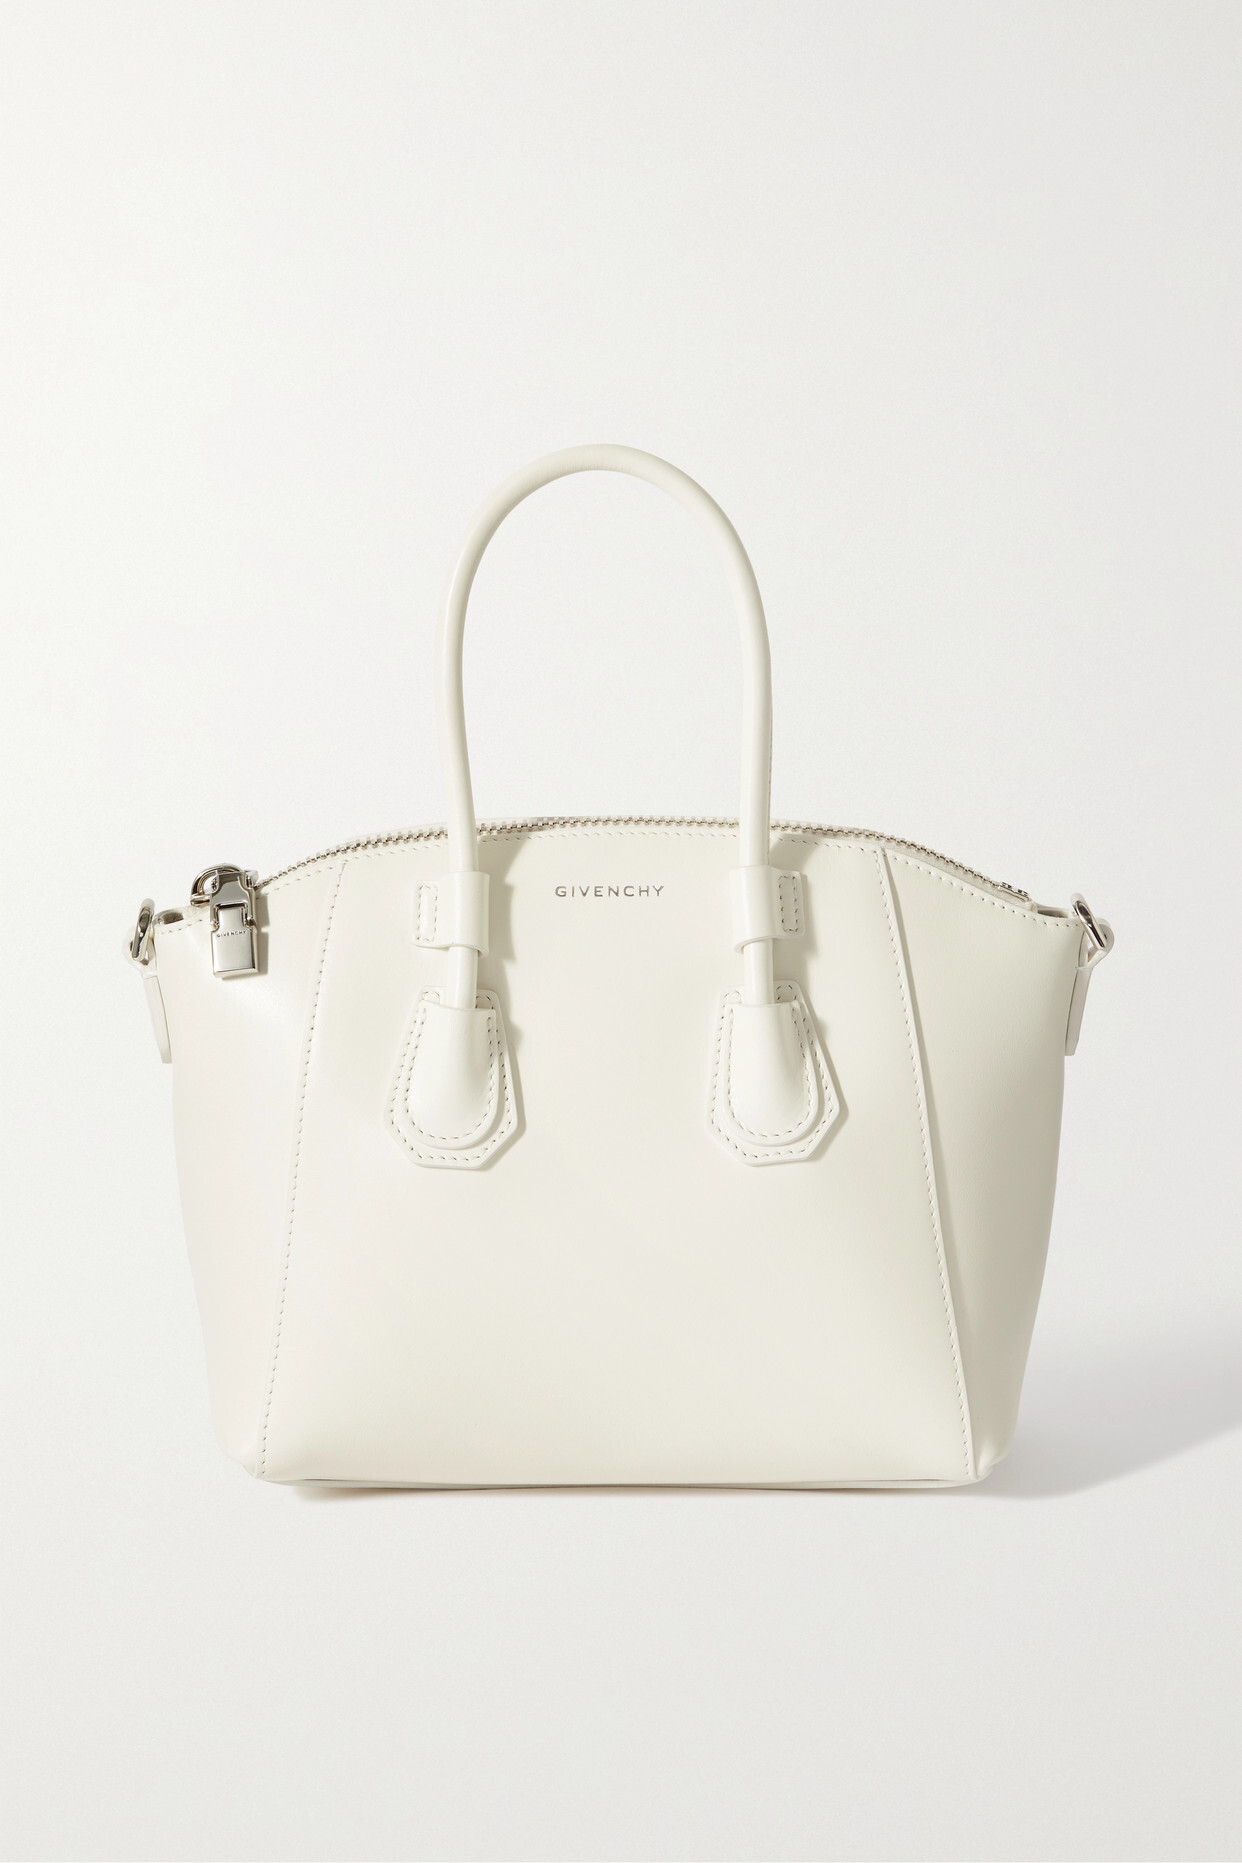 Givenchy - Antigona Mini Leather Tote - White